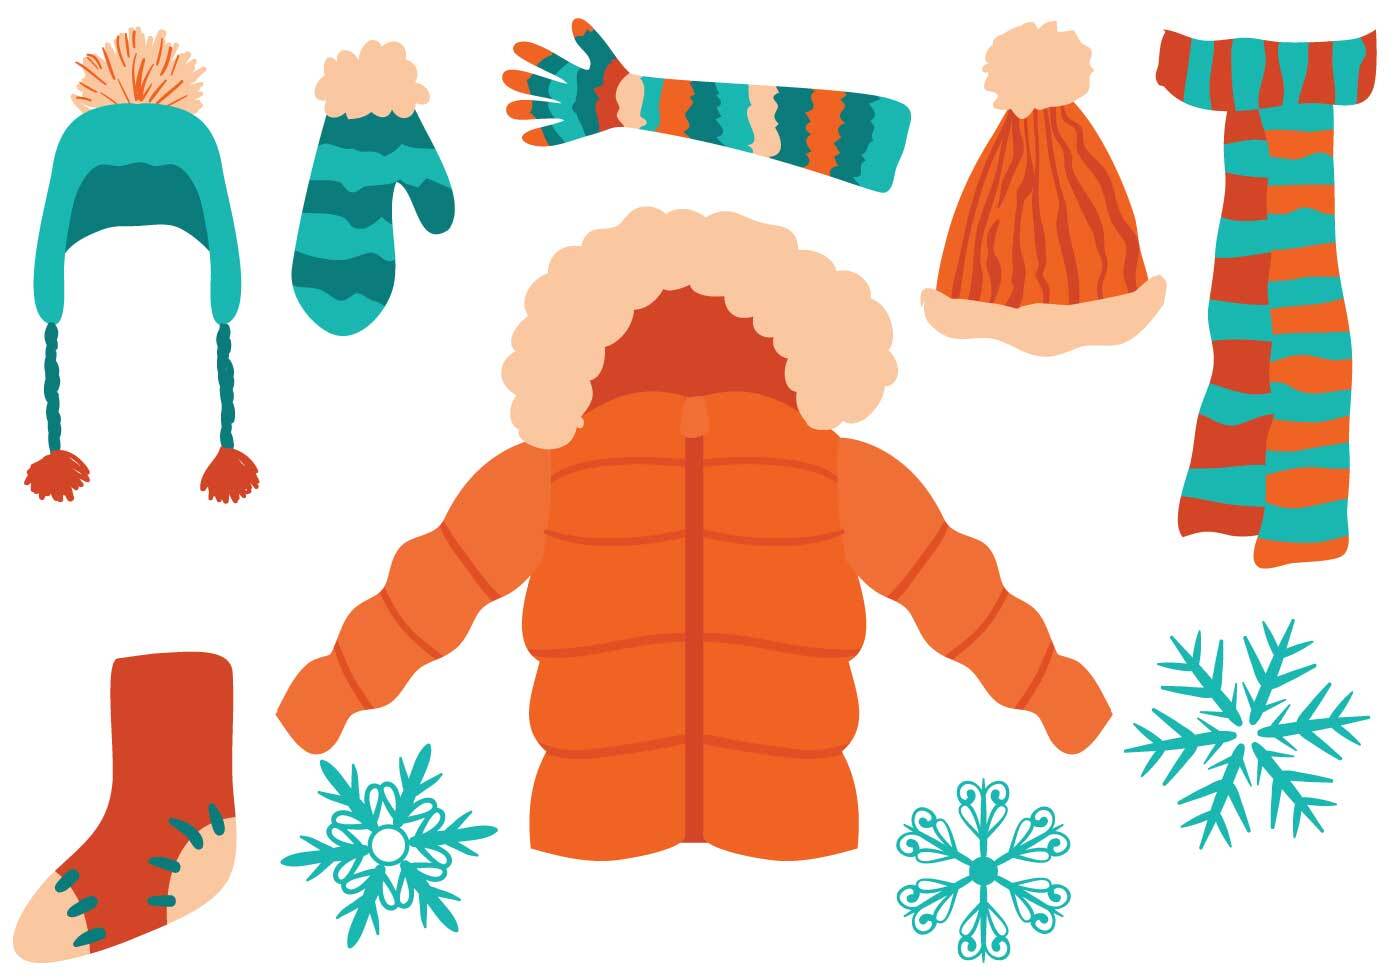 Encontrar ropa abrigada para el invierno — VT 211